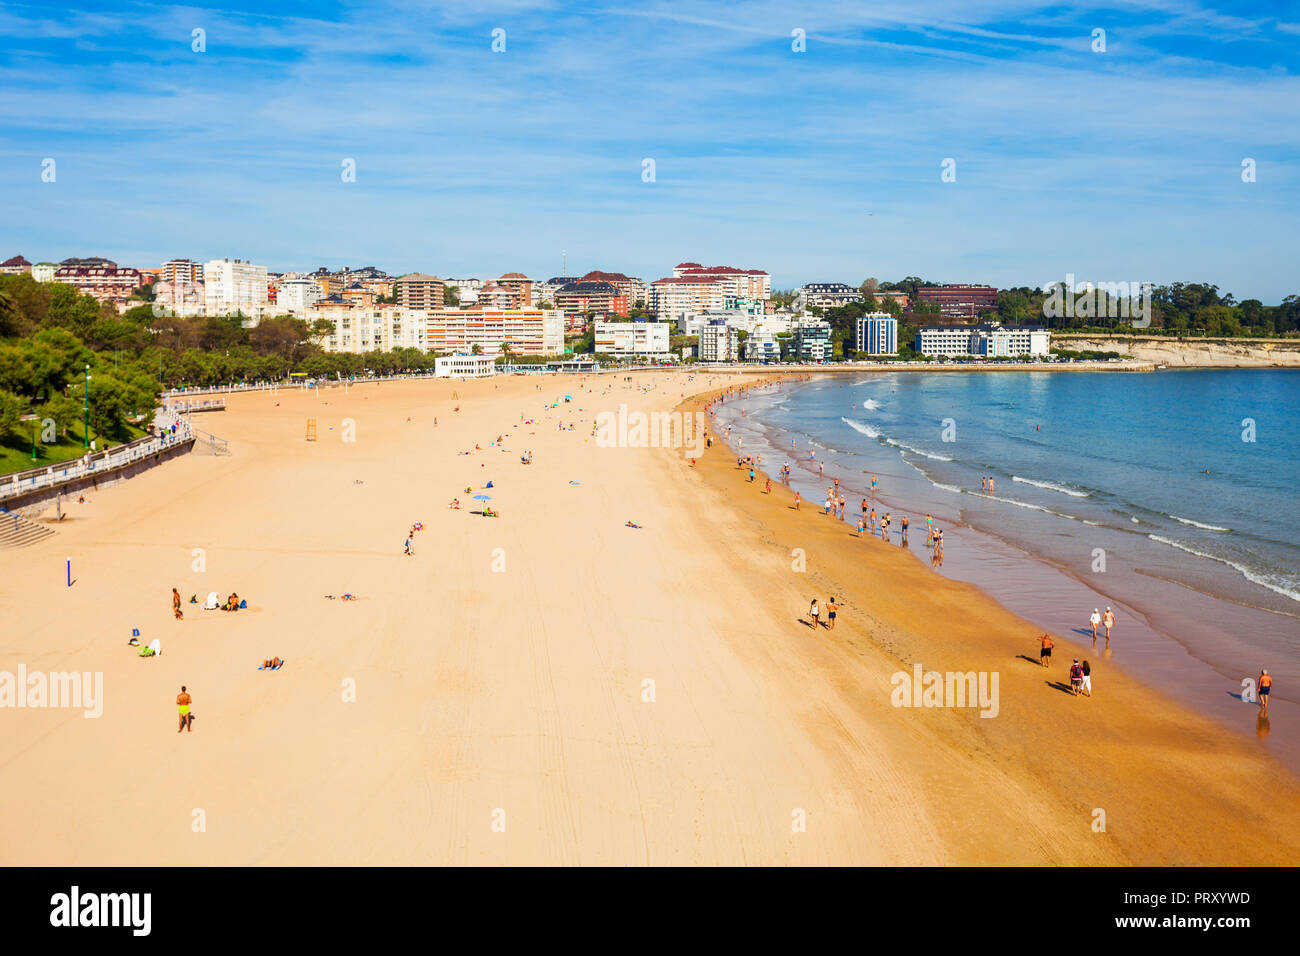 Santander city beach vue panoramique aérienne. Santander est la capitale de la région de Cantabrie en Espagne Banque D'Images